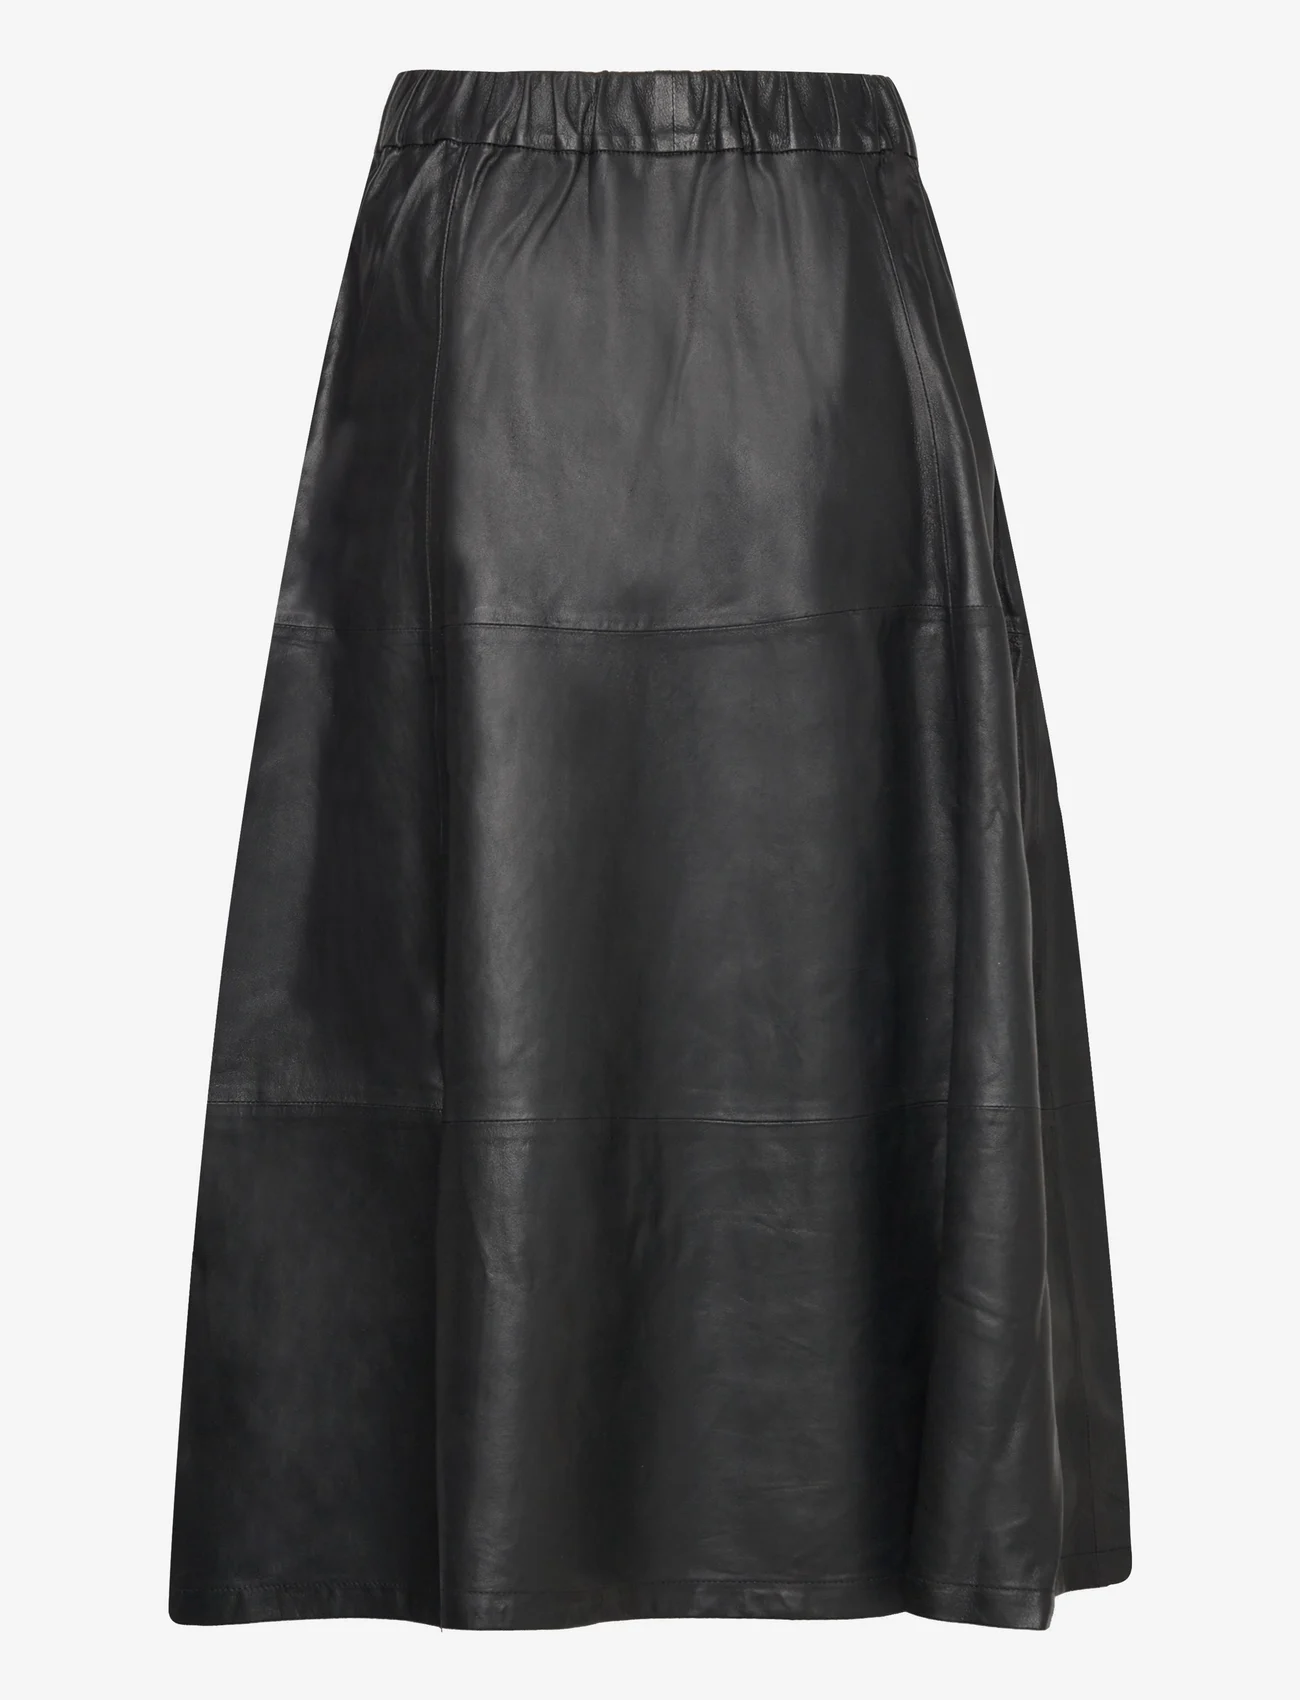 DEPECHE - Long Leather Skirt - 099 black (nero) - 1